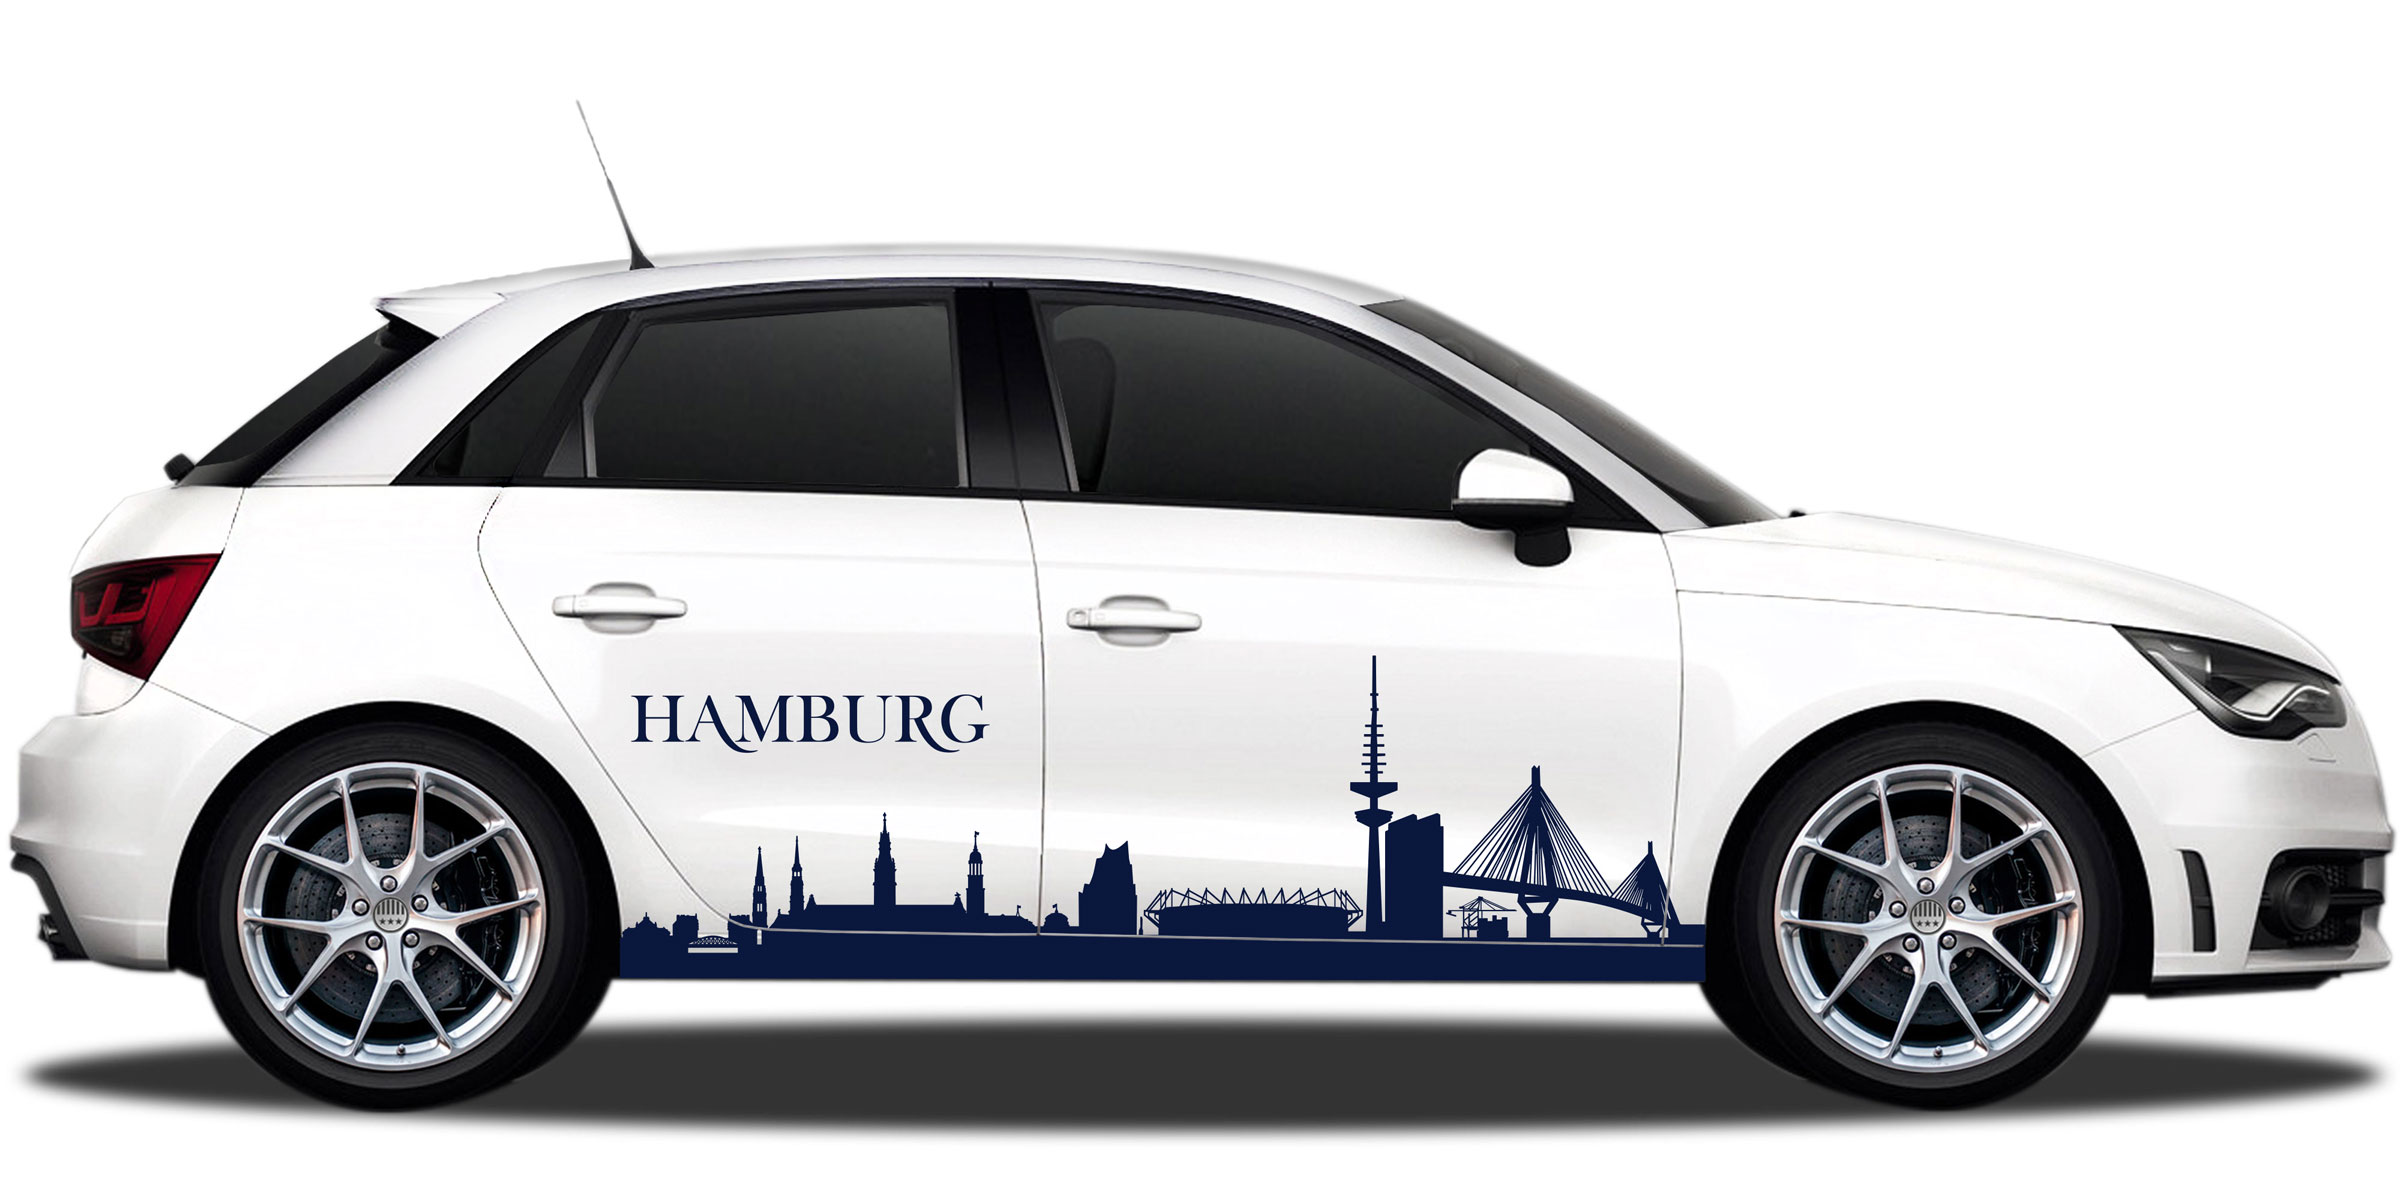 Die Skyline von Hamburg als stylischer Autoaufkleber